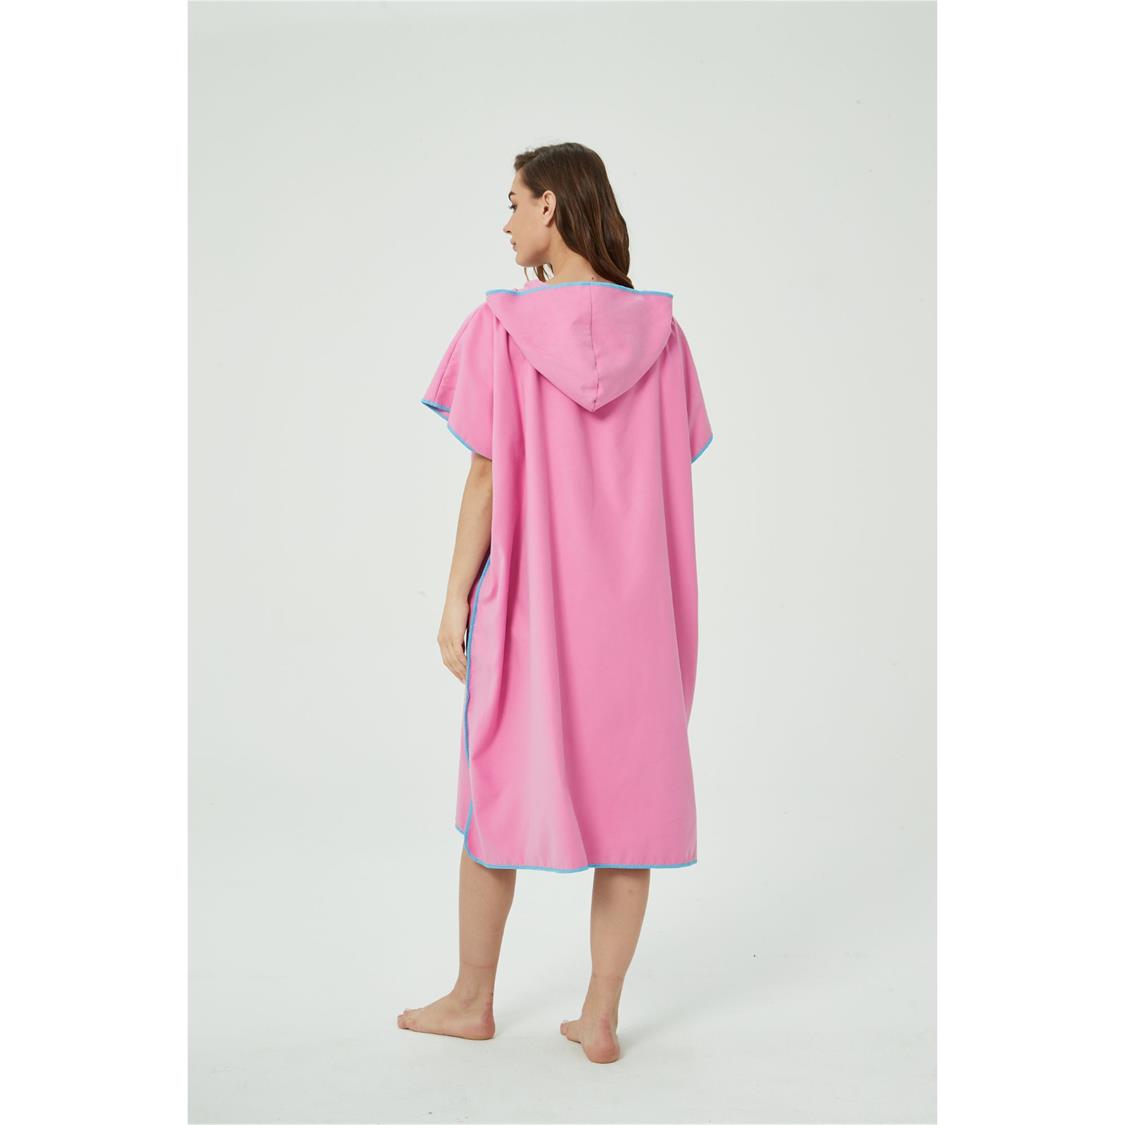 Hooded Towel Pink 2